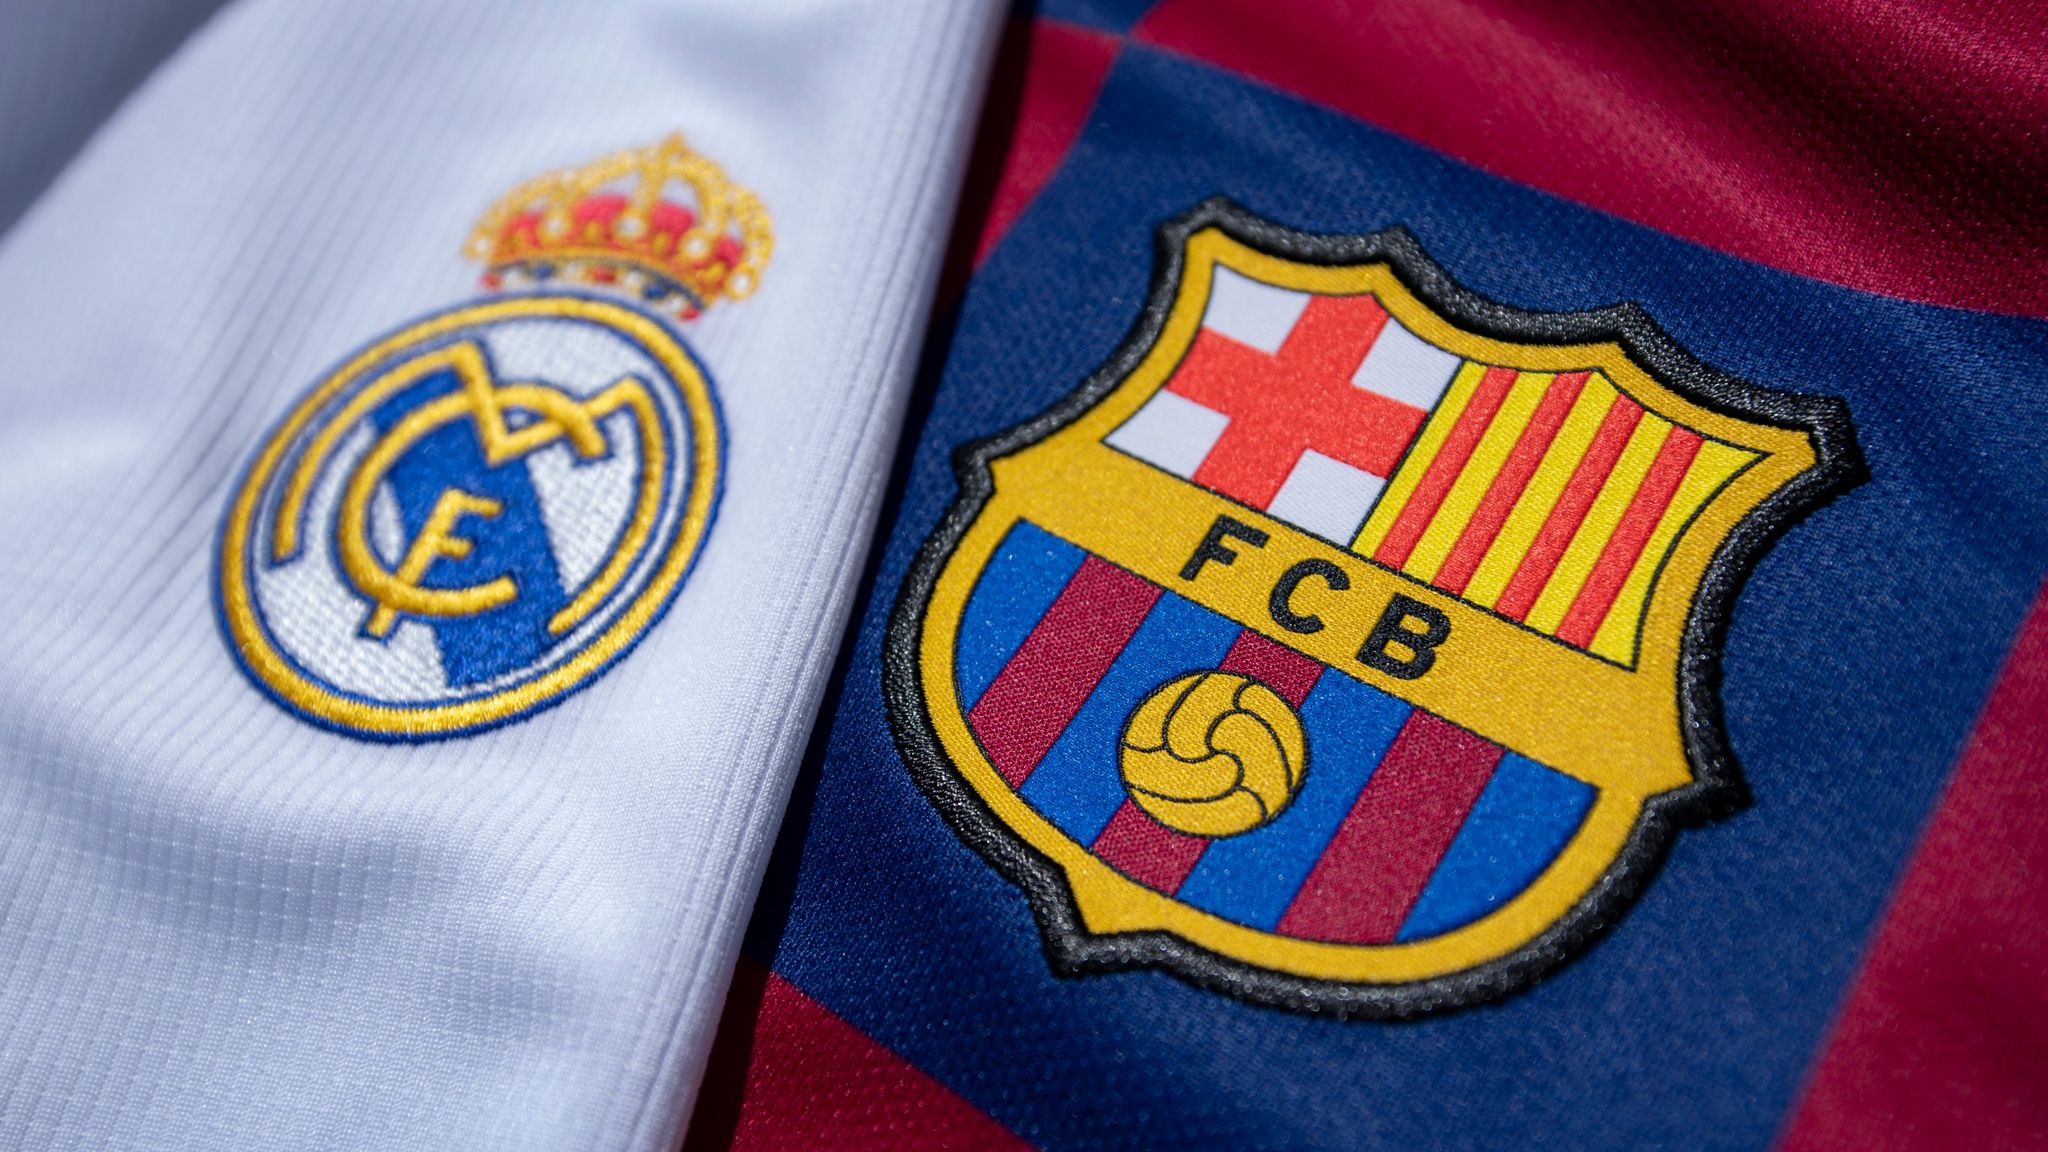 Ferencvarosi TC vs Barcelona: Will Barcelona have an easy win today?